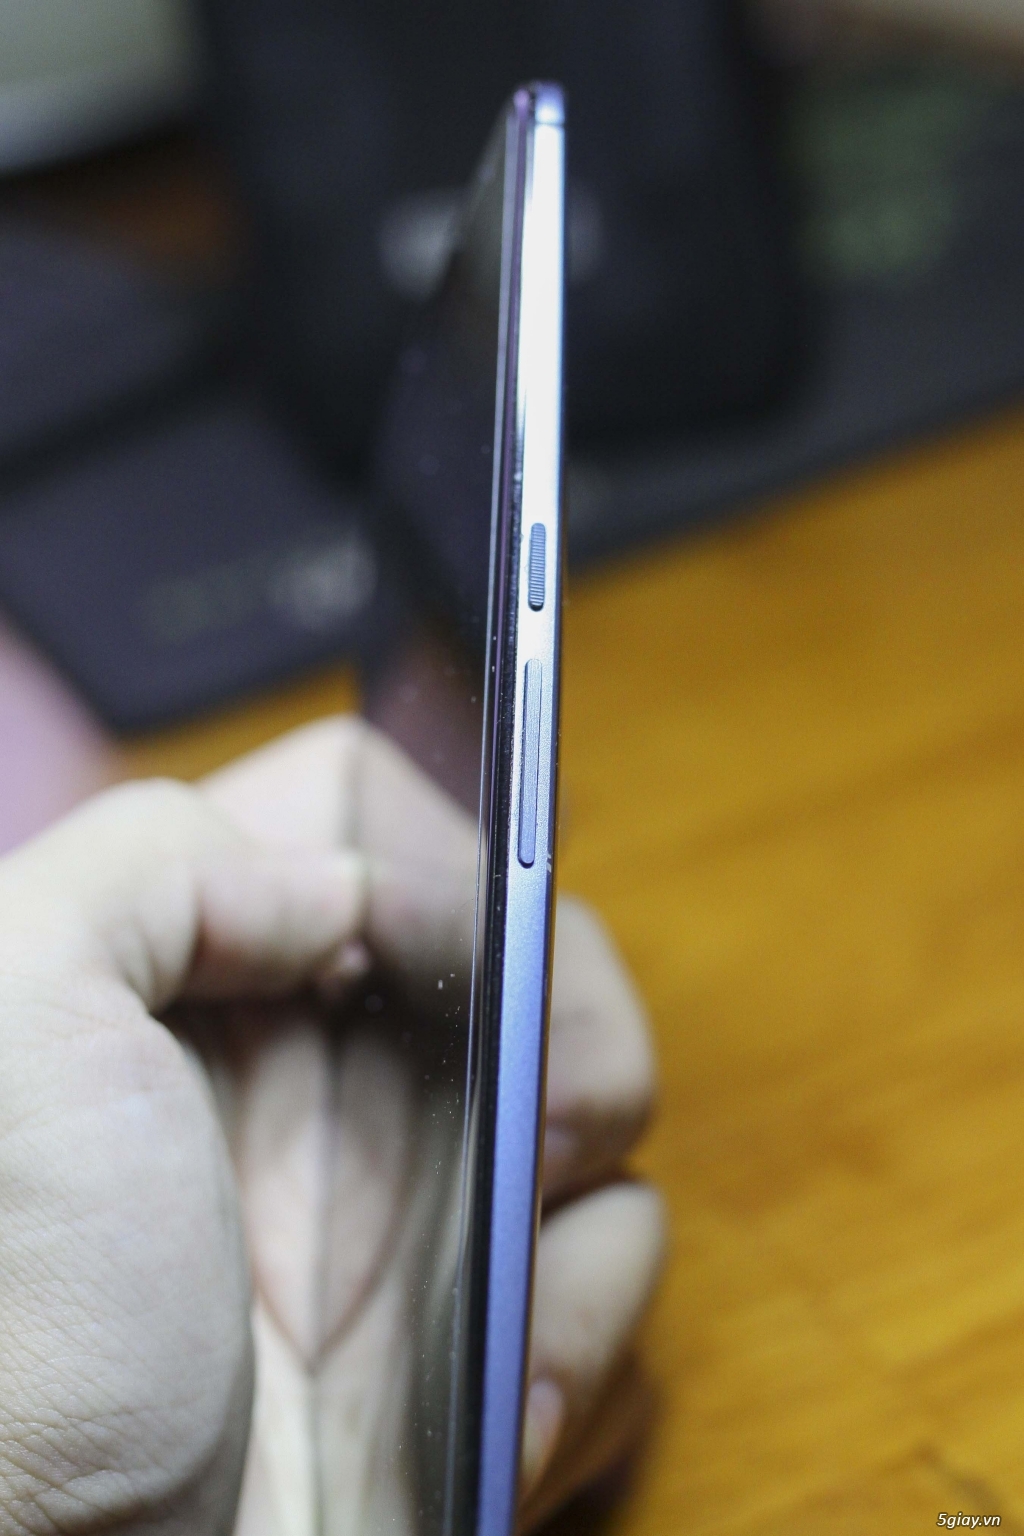 Thanh lý Google Nexus 6 hàng cực độc 32GB|3GB|Snap 805|Màn 2k - 2